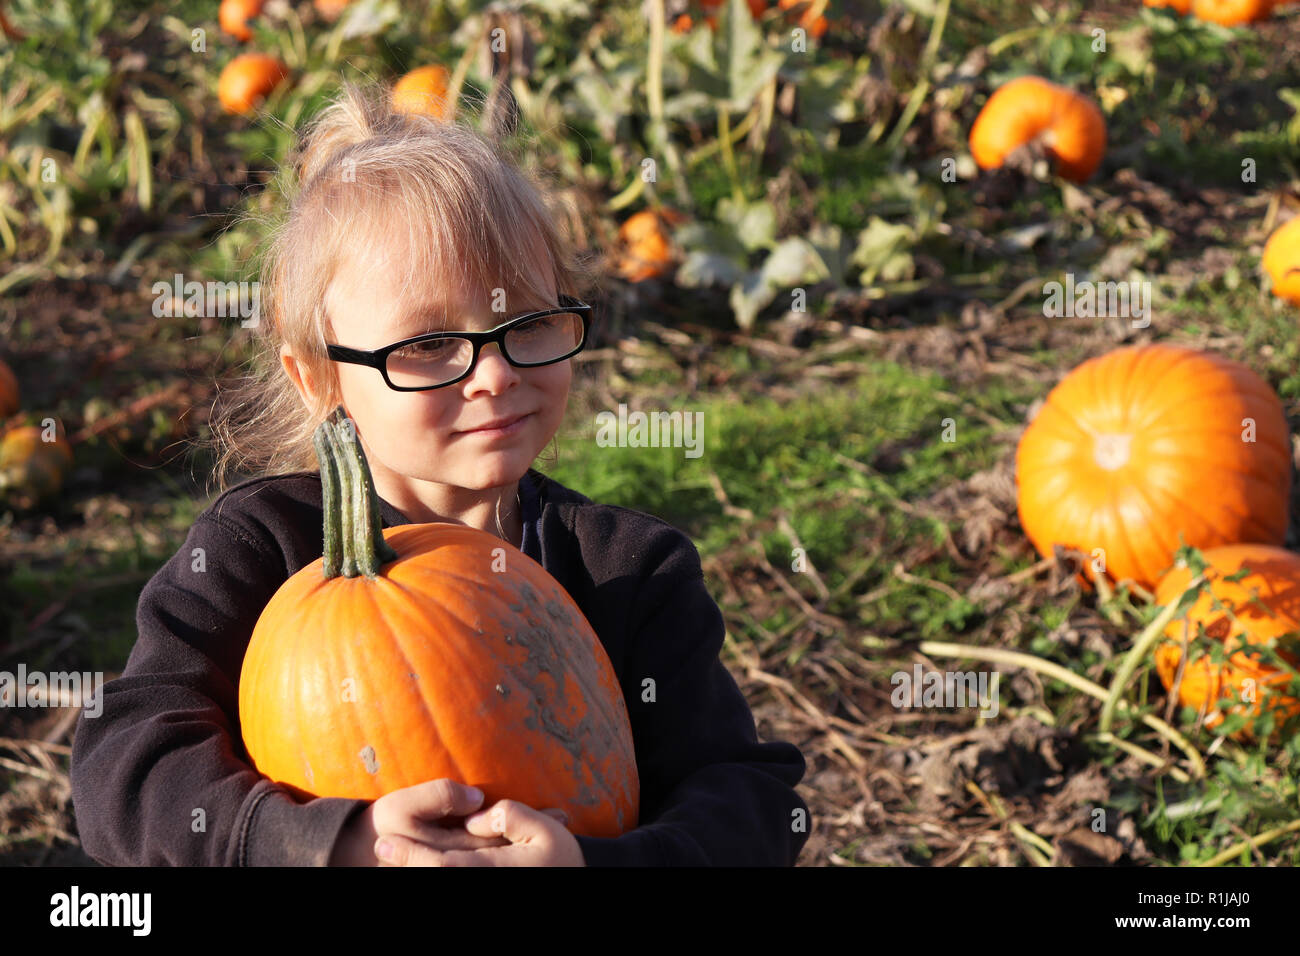 Little girl picking a pumpkin in a pumpkin patch Stock Photo